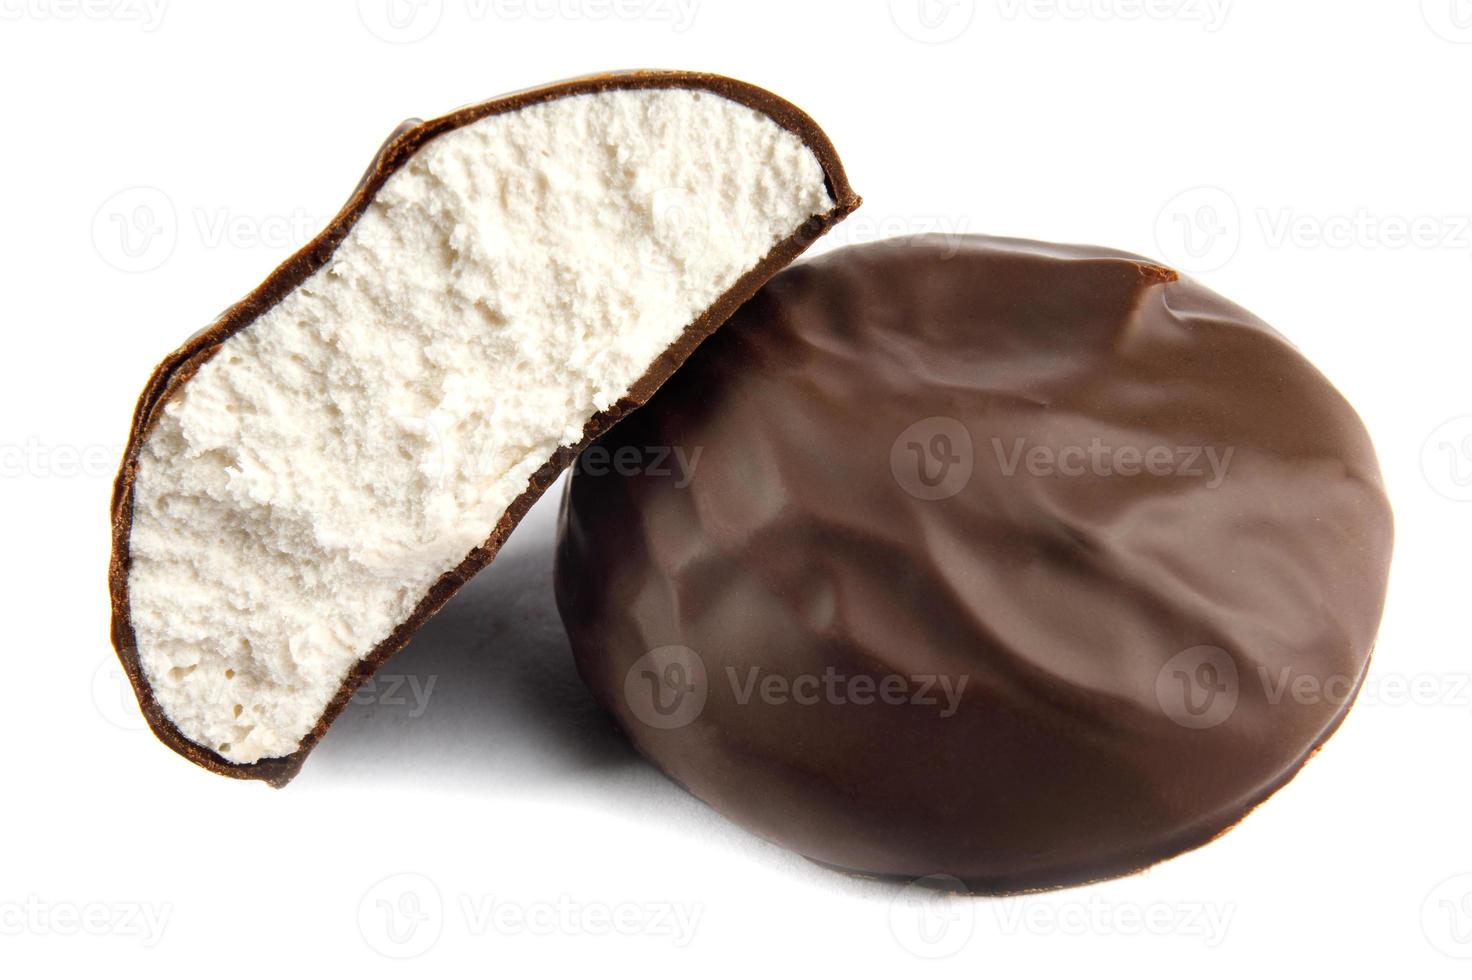 marshmallows no chocolate são isolados em um fundo branco. foto